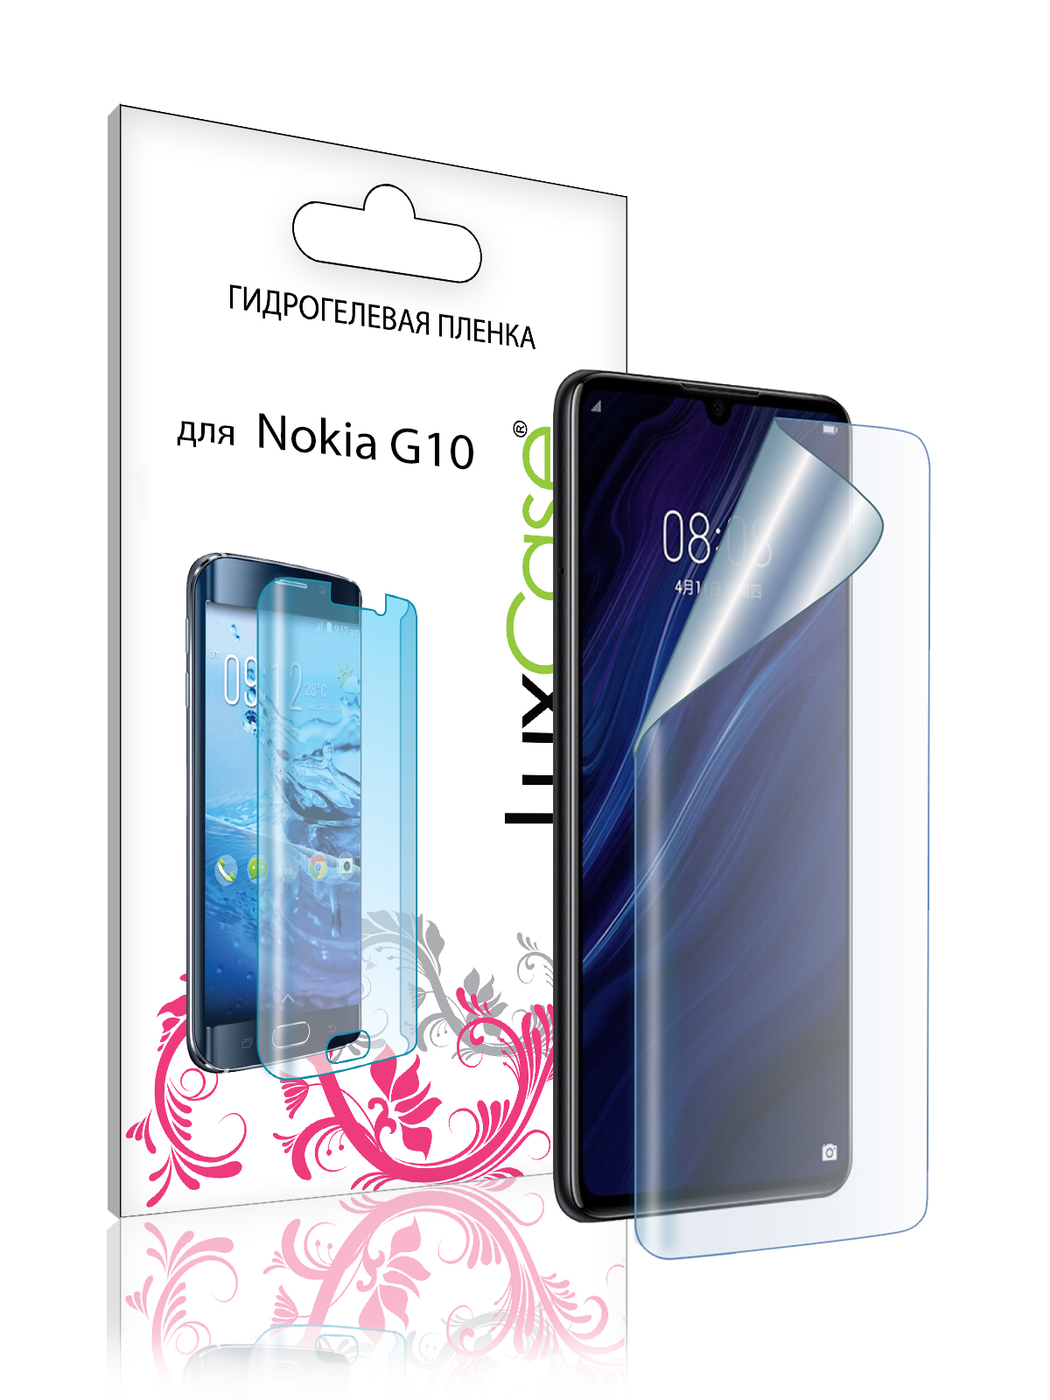 Гидрогелевая пленка LuxCase для Nokia G10 Front Transparent 86389 4 в 1 для nokia g10 стекло для nokia g10 закаленное стекло hd защита для экрана защитная пленка для камеры nokia g20 g10 стекло для объектива